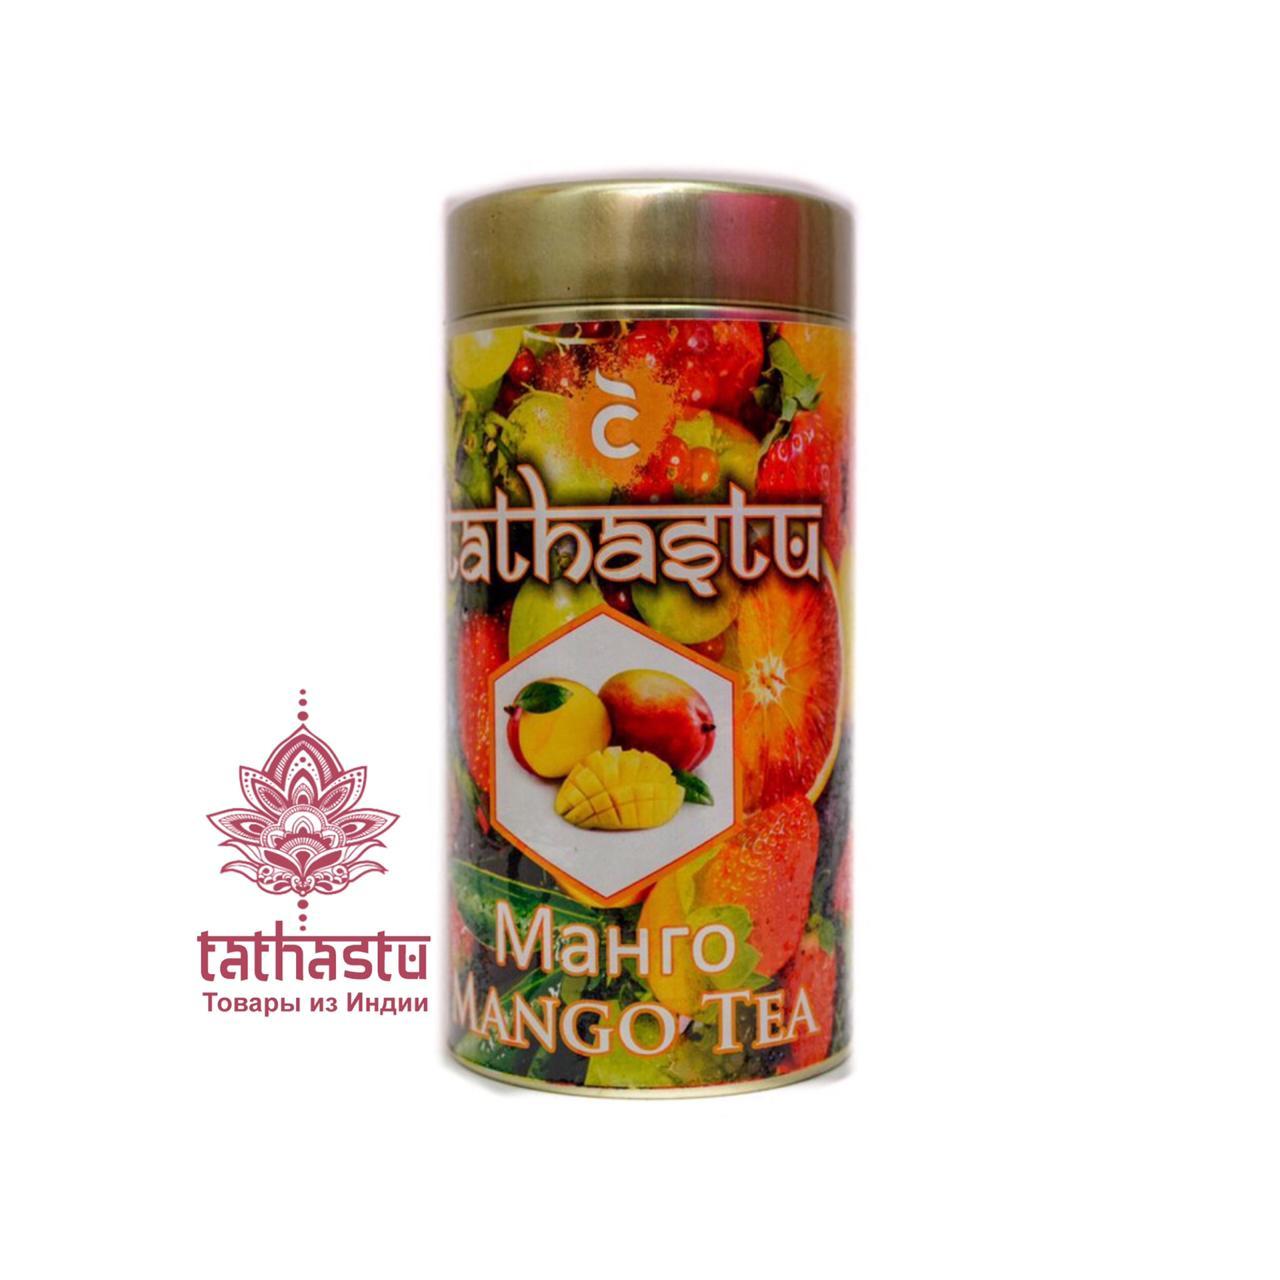 Tathastu чёрный чай с ароматом манго. Tathastu товары и индии